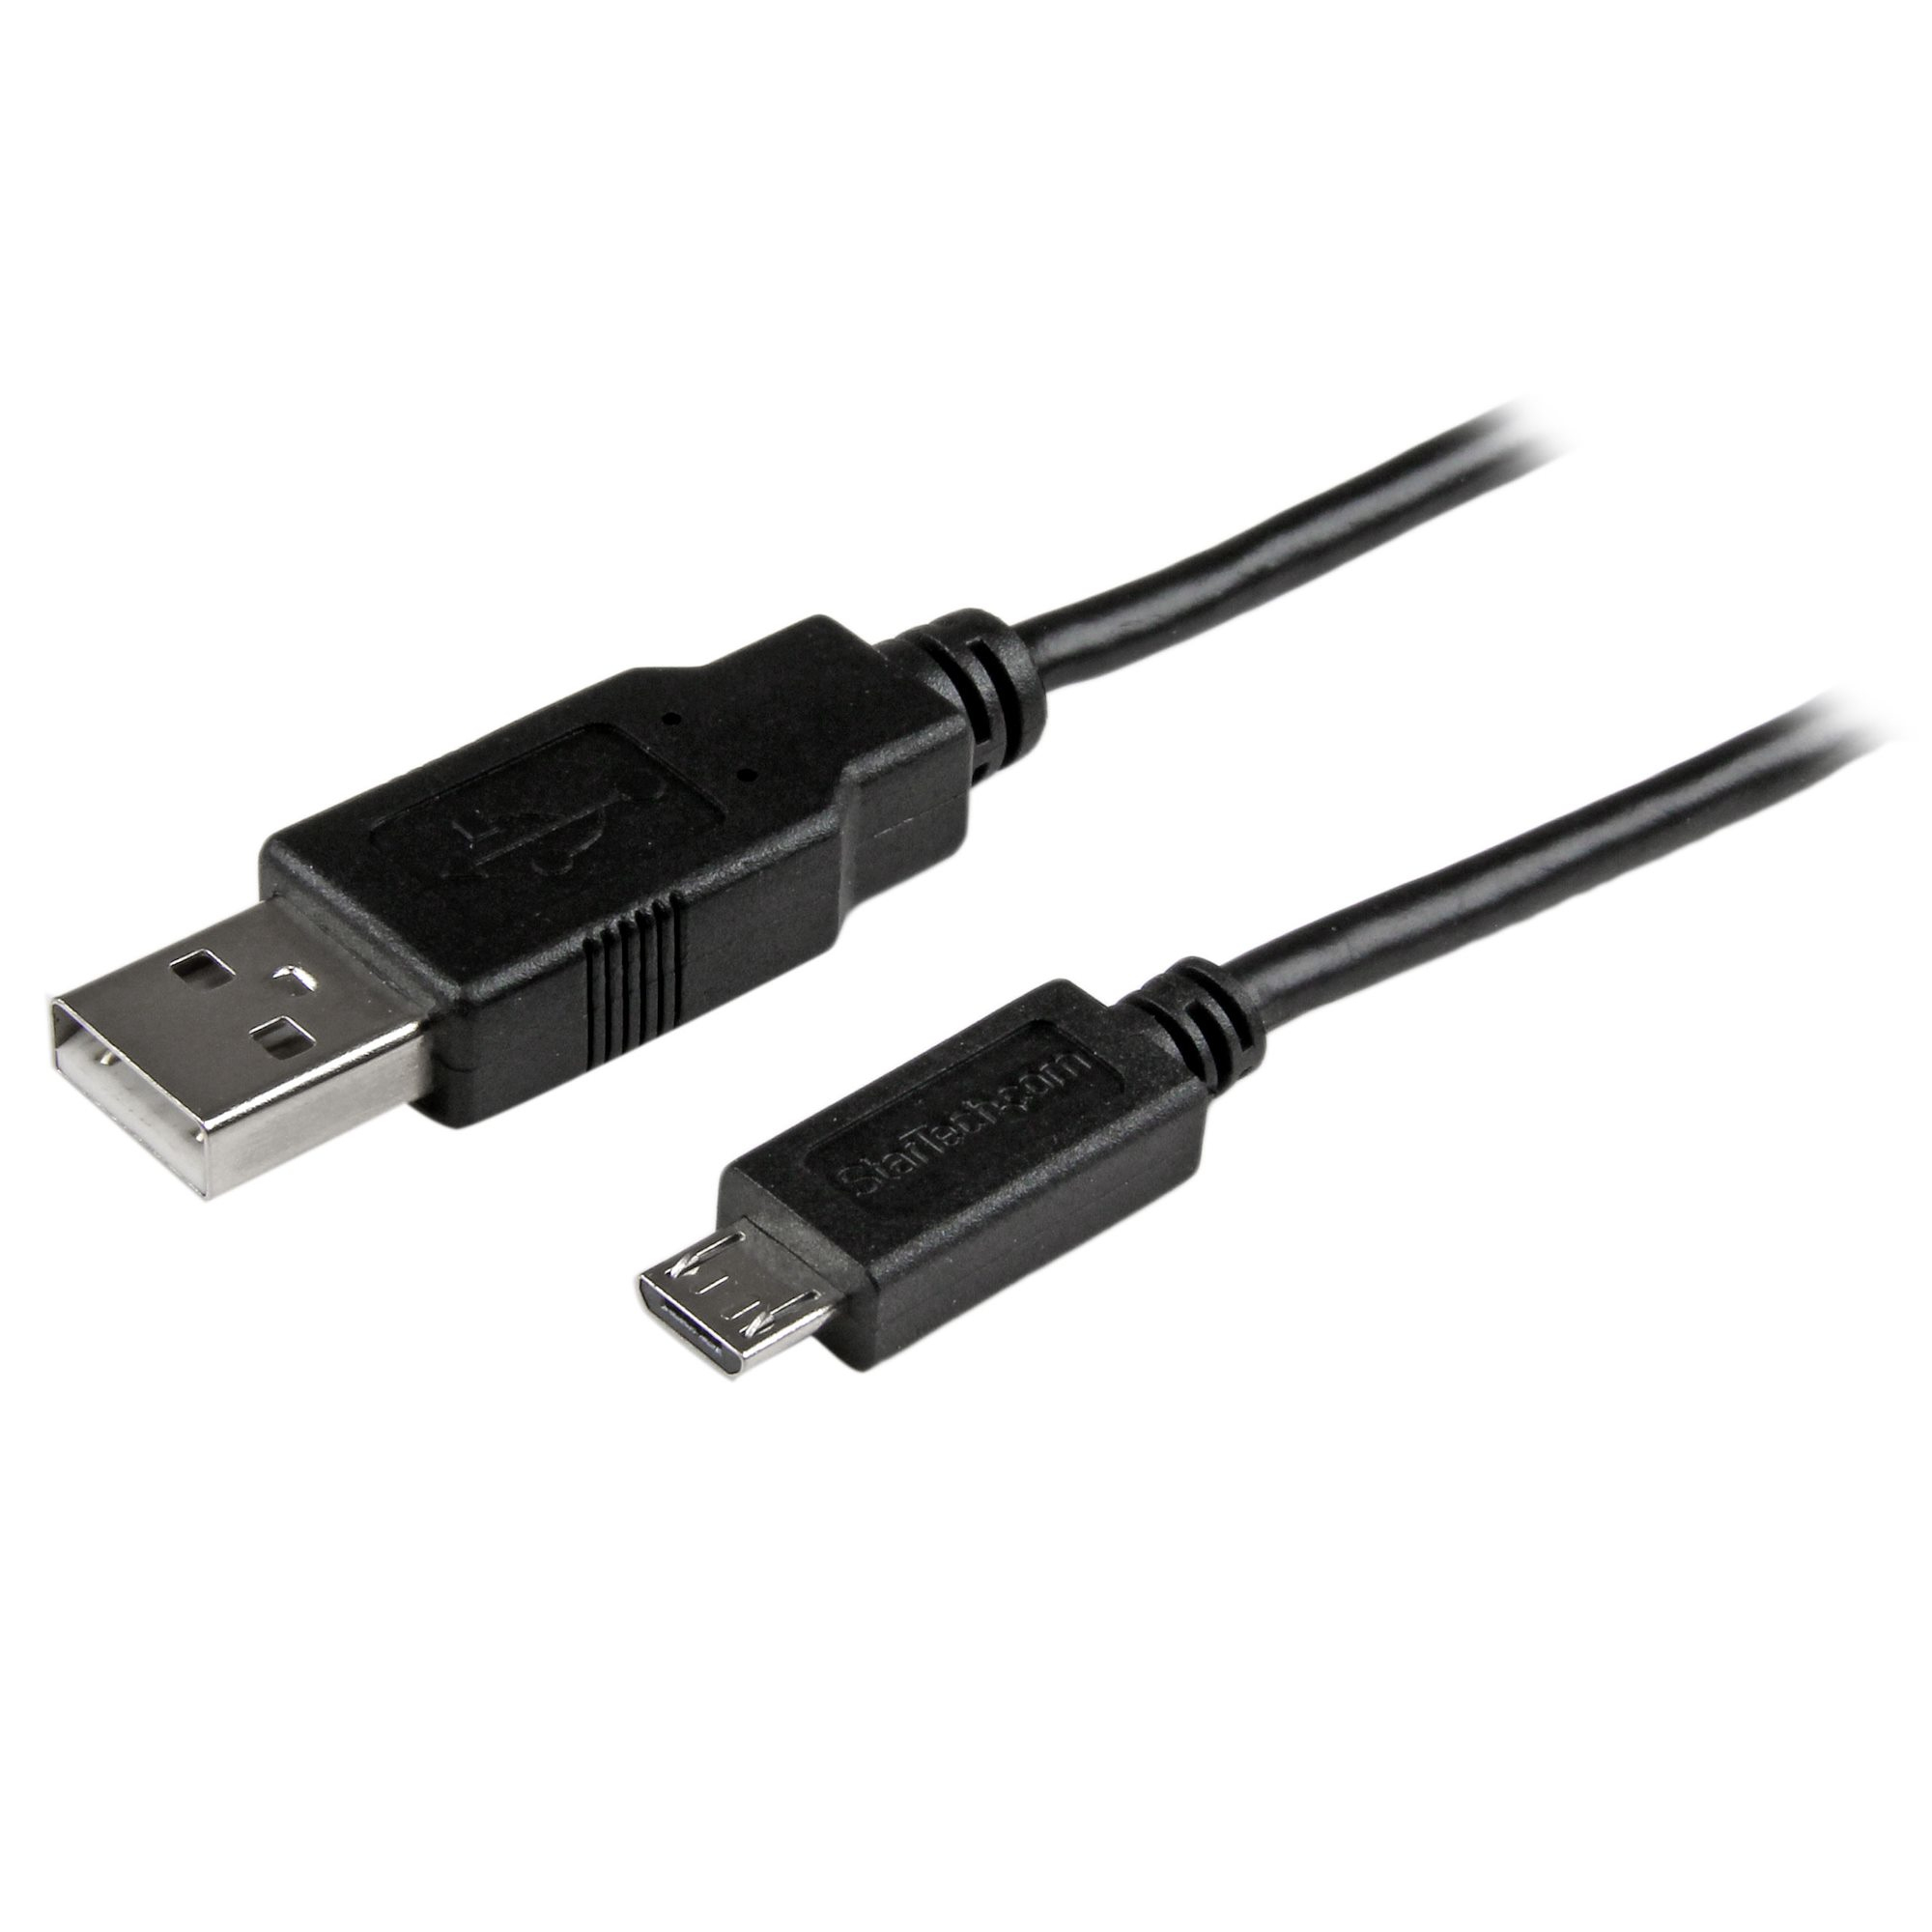 Verklaring hoop conjunctie StarTech.com Lange micro-USB oplaadkabel en sync kabel M/M 24 AWG 3 m  (USBAUB3MBK) kopen » Centralpoint